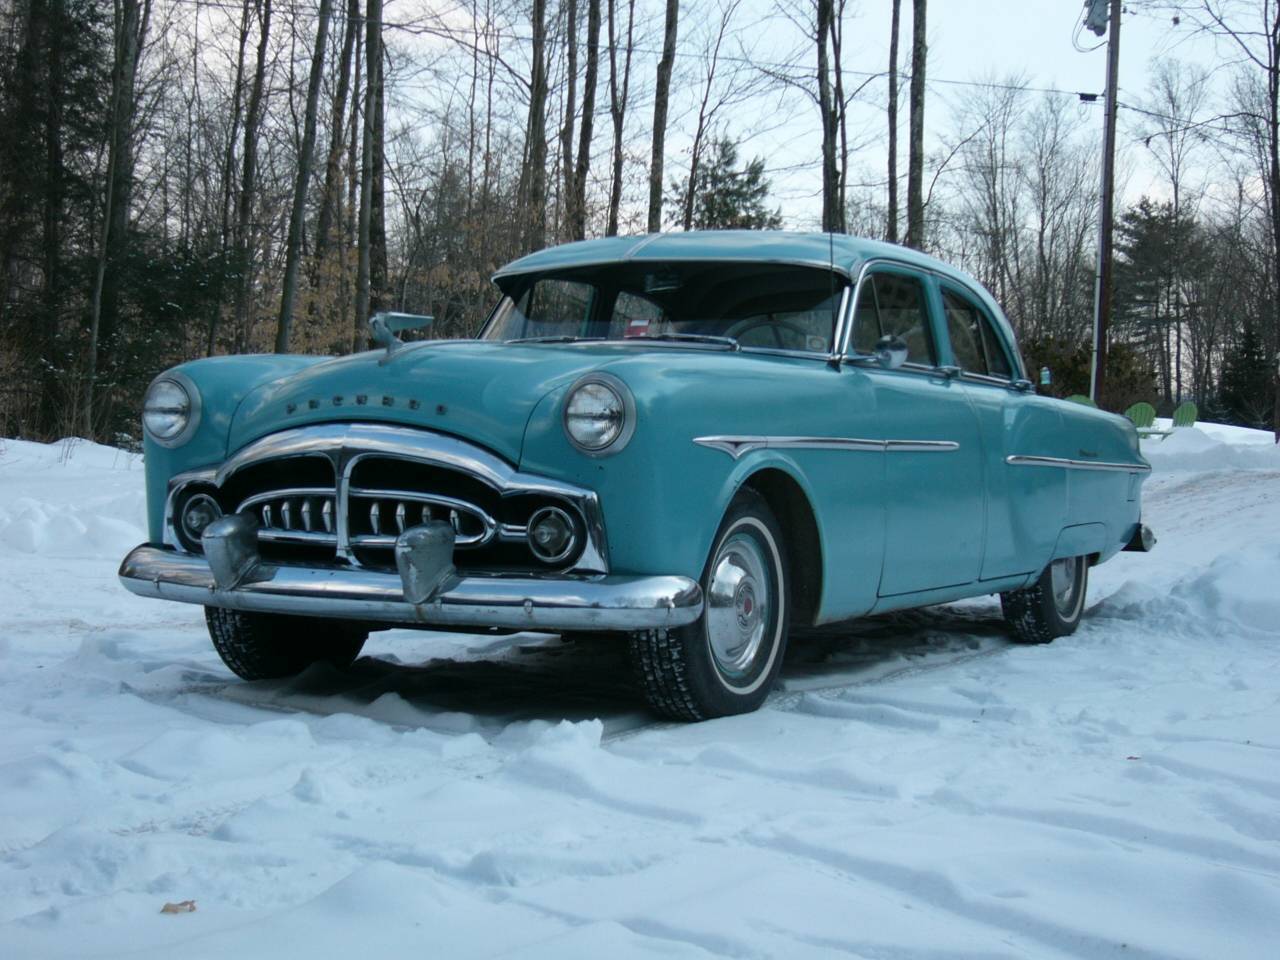 1951 Packard 300, winter 2014